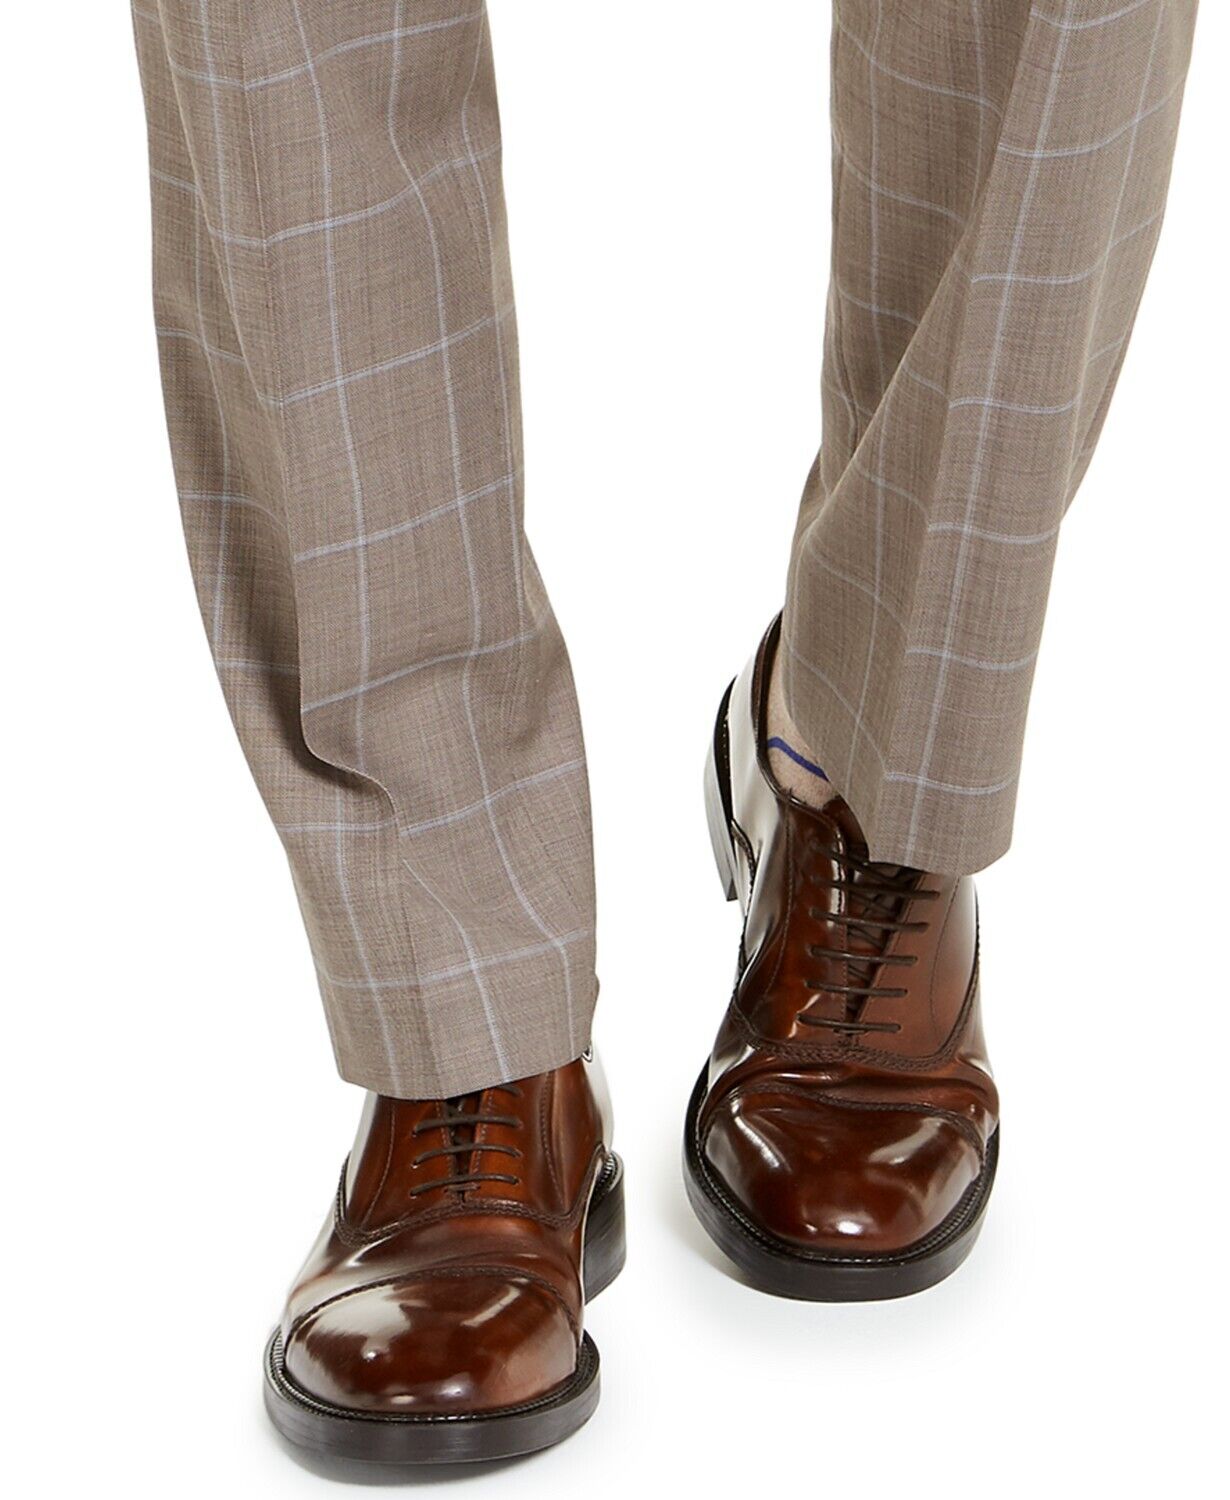 Michael Kors Men's Classic-Fit Stretch Brown Windowpane Suit Pants 30 x 32